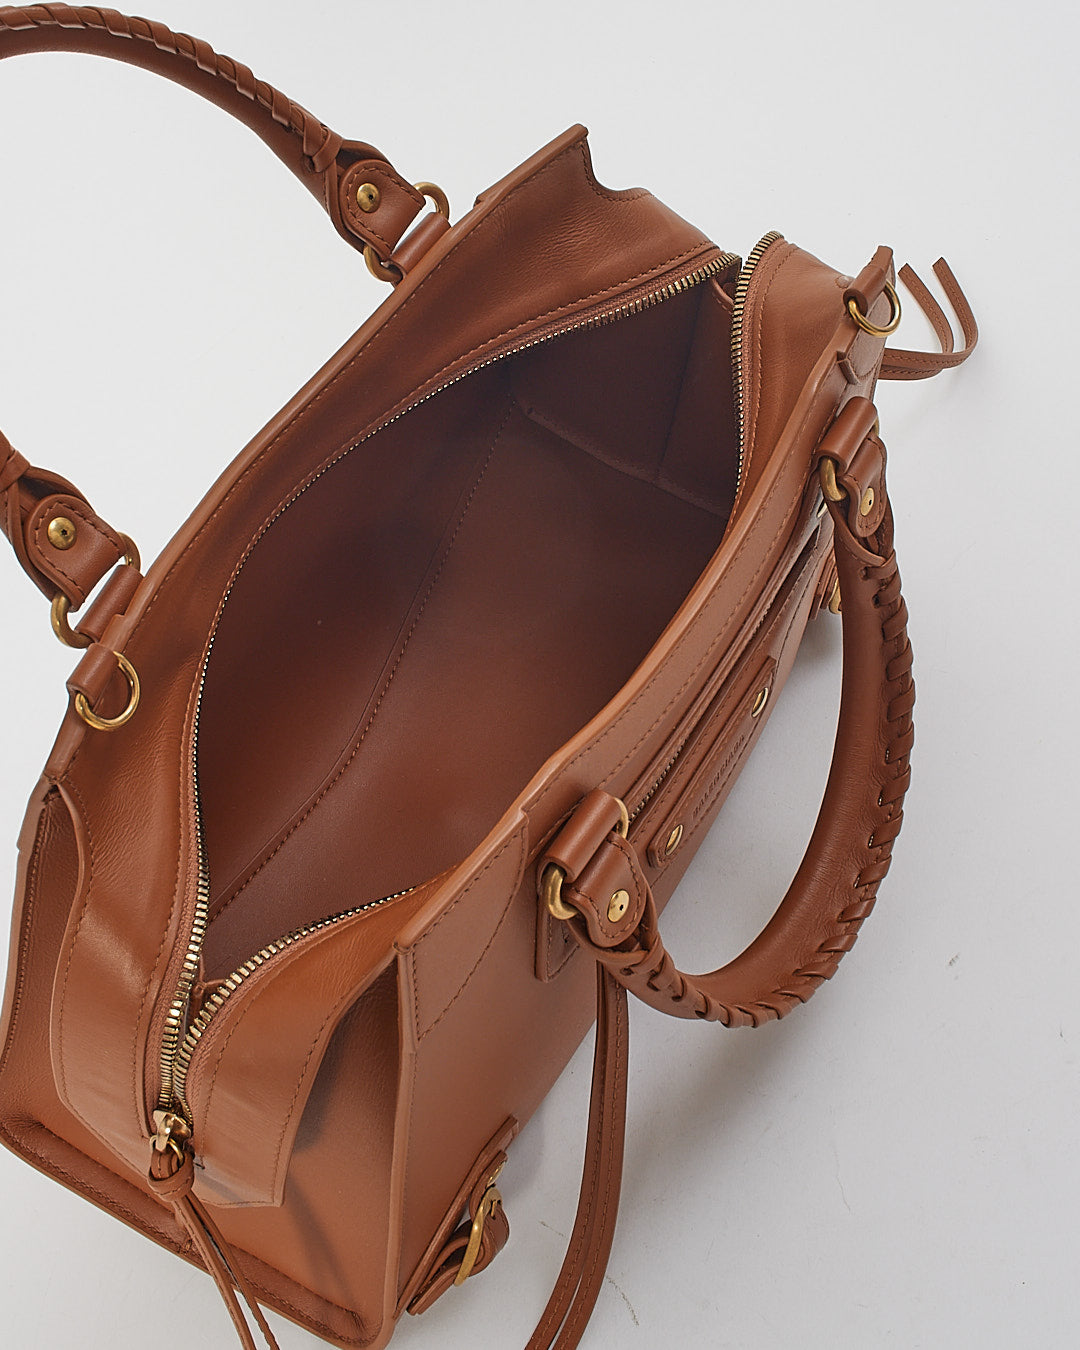 Balenciaga Camel Tan Leather Neo Classic Handbag